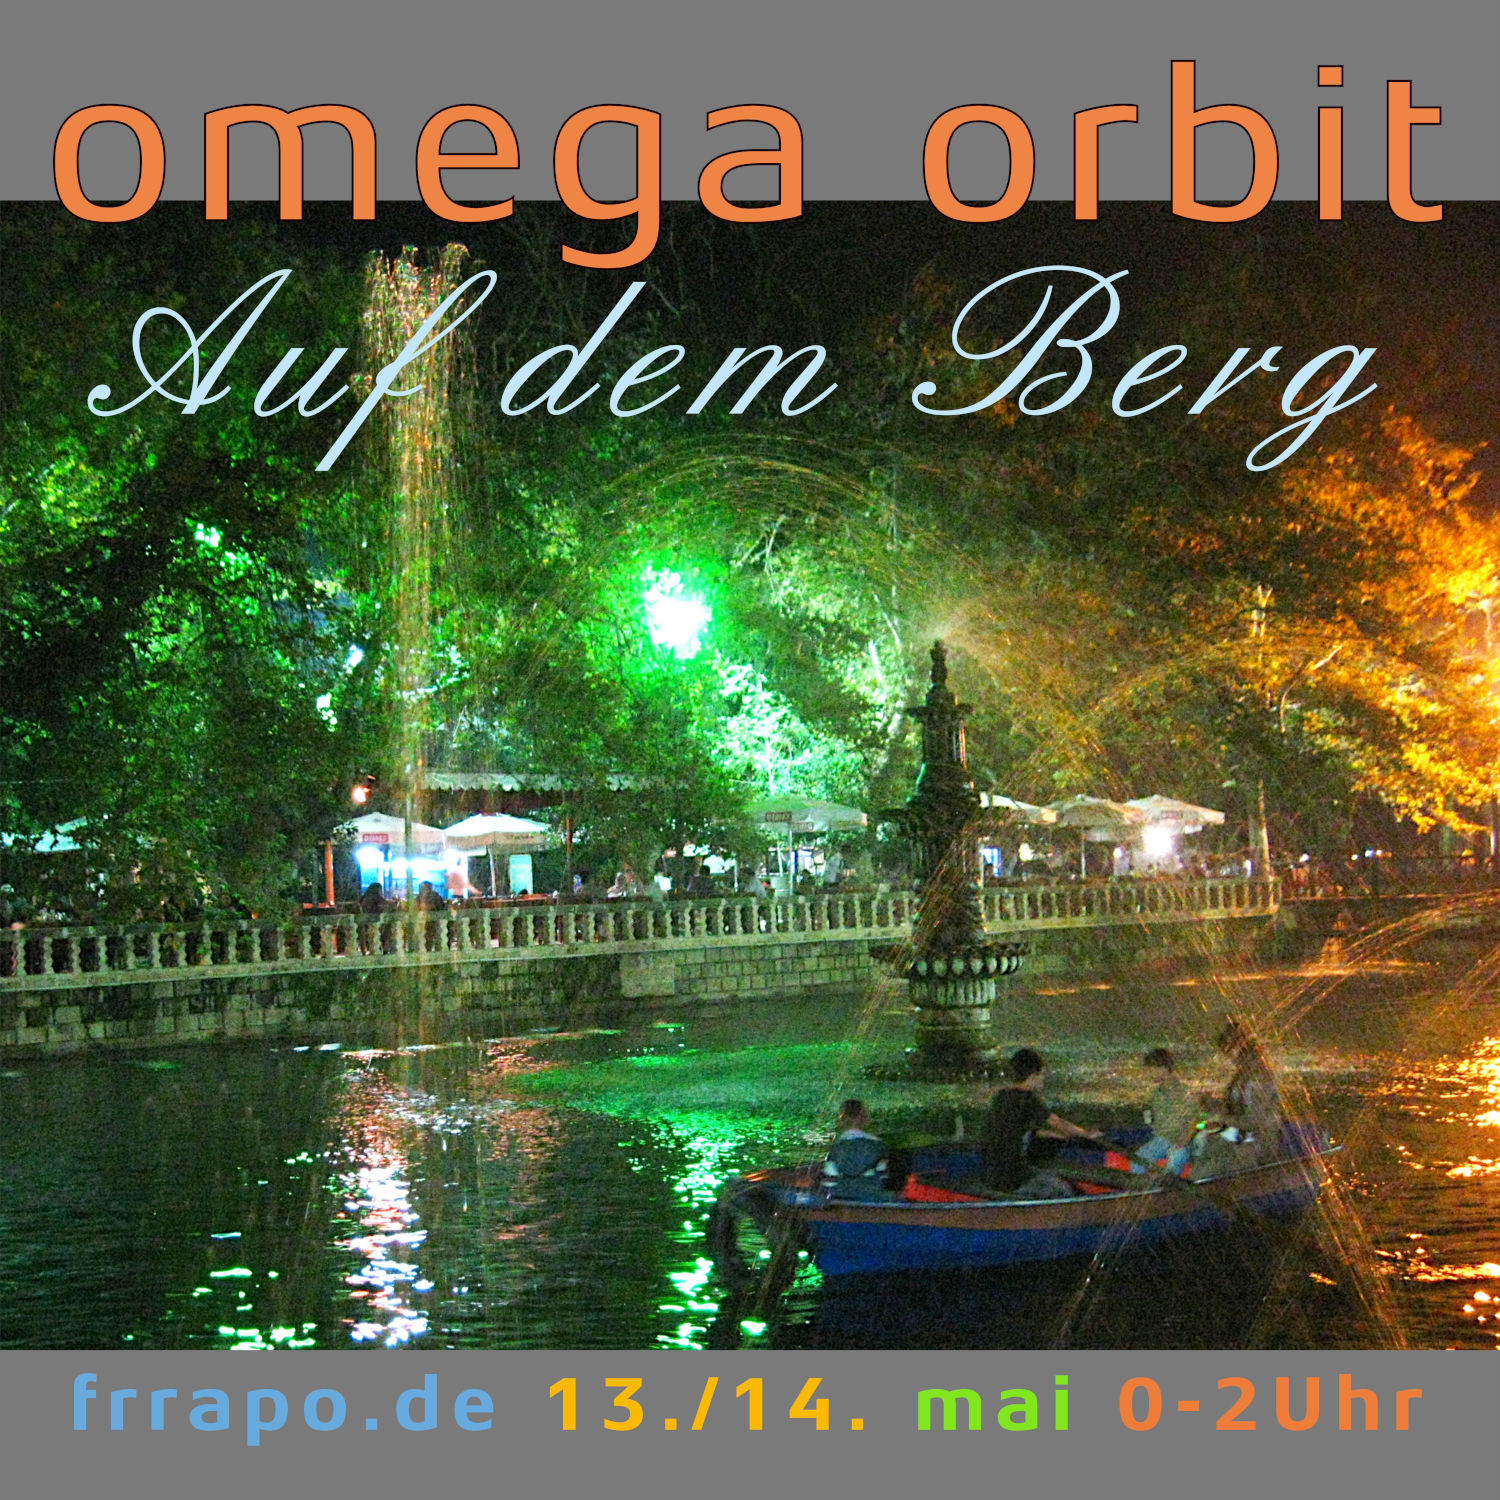 Omega-Orbit – Auf dem berg – am 14.05. von 00:00 bis 02:00 Uhr